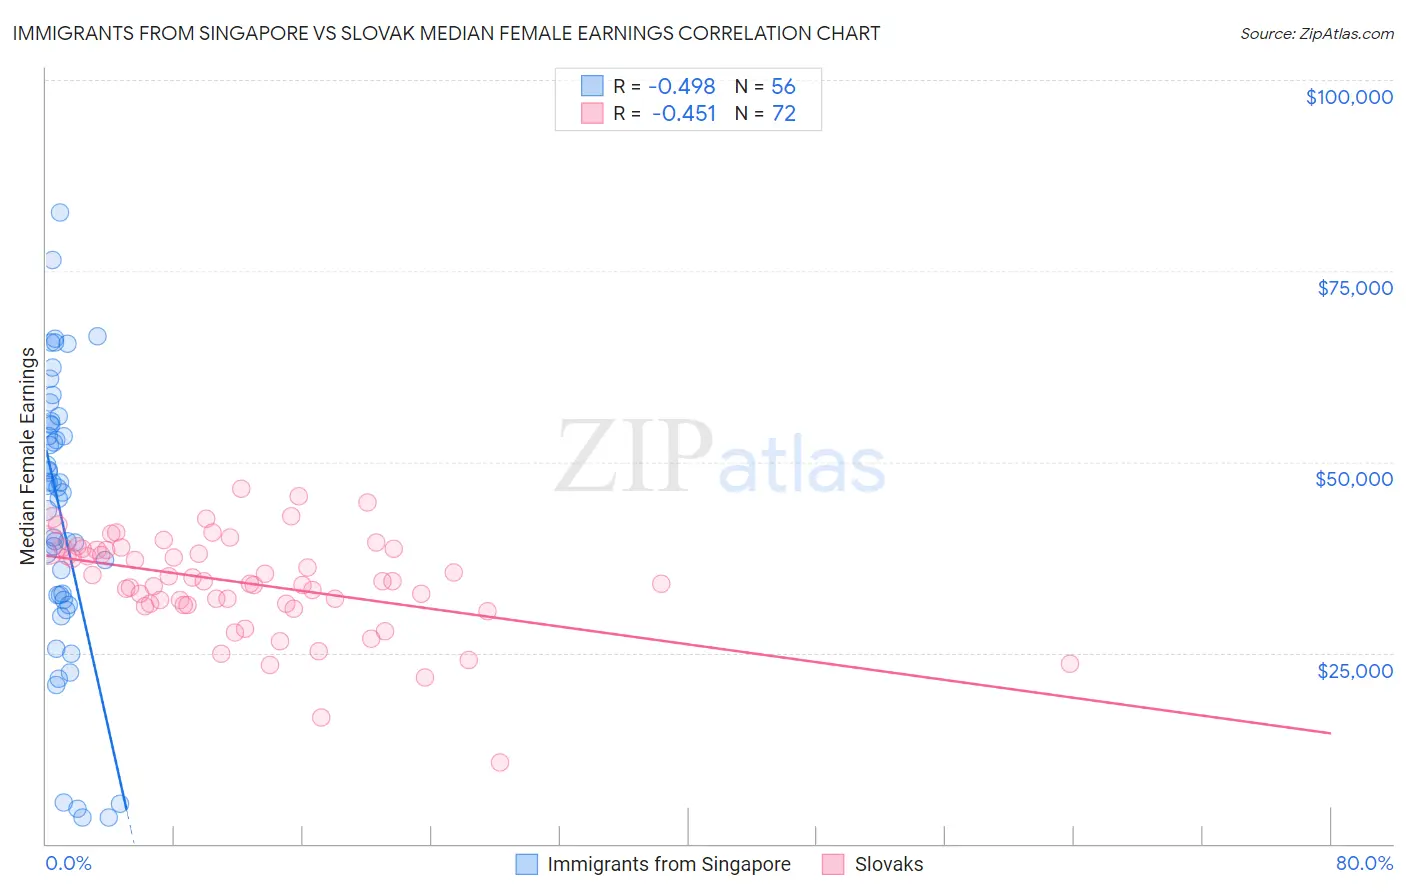 Immigrants from Singapore vs Slovak Median Female Earnings